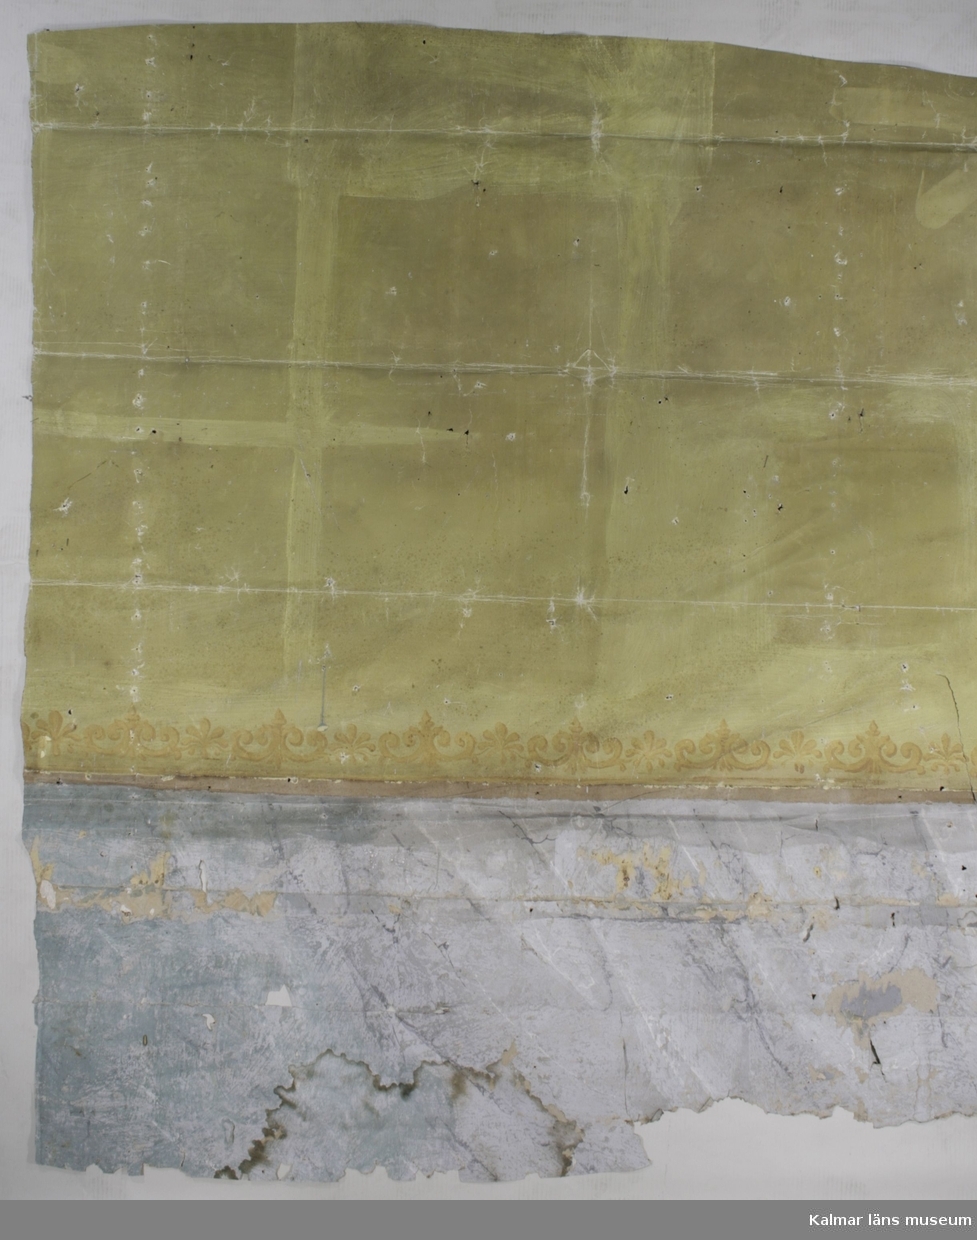 KLM 39925:6:1. Tapet av papper. Ett större väggfält och elva mindre bitar. Målad tapet med grön botten på två tredjedelar och schablontryckt bård i brunt och gult innan övergång till del med målad marmorimitation i grått och grönblått, eventuellt samtida. På de mindre bitarna finns fragment av flera ovanliggande tapetlager med andra mönster, bland annat en bård, bredd cirka 11 cm, med grå drapering och gulbruna rosor och kransar med schweinfurtergröna blad. Närmast ovanpå denna sitter fragment av tryckt tapet med bruna och röda blommor på satinerad beige botten. Ovanpå denna sitter fragment av velourbård i svart och brunt. Över denna en tryckt tapet med svart botten och nästan yttäckande blom- och bladmönster i bruna färger och guld, KLM 39925:6:2. Överst av tapetlagren sitter en tryckt tapet med ljusgrön botten och vissa utsparade ytor. Gulddetaljer i lodräta fältindelningar.